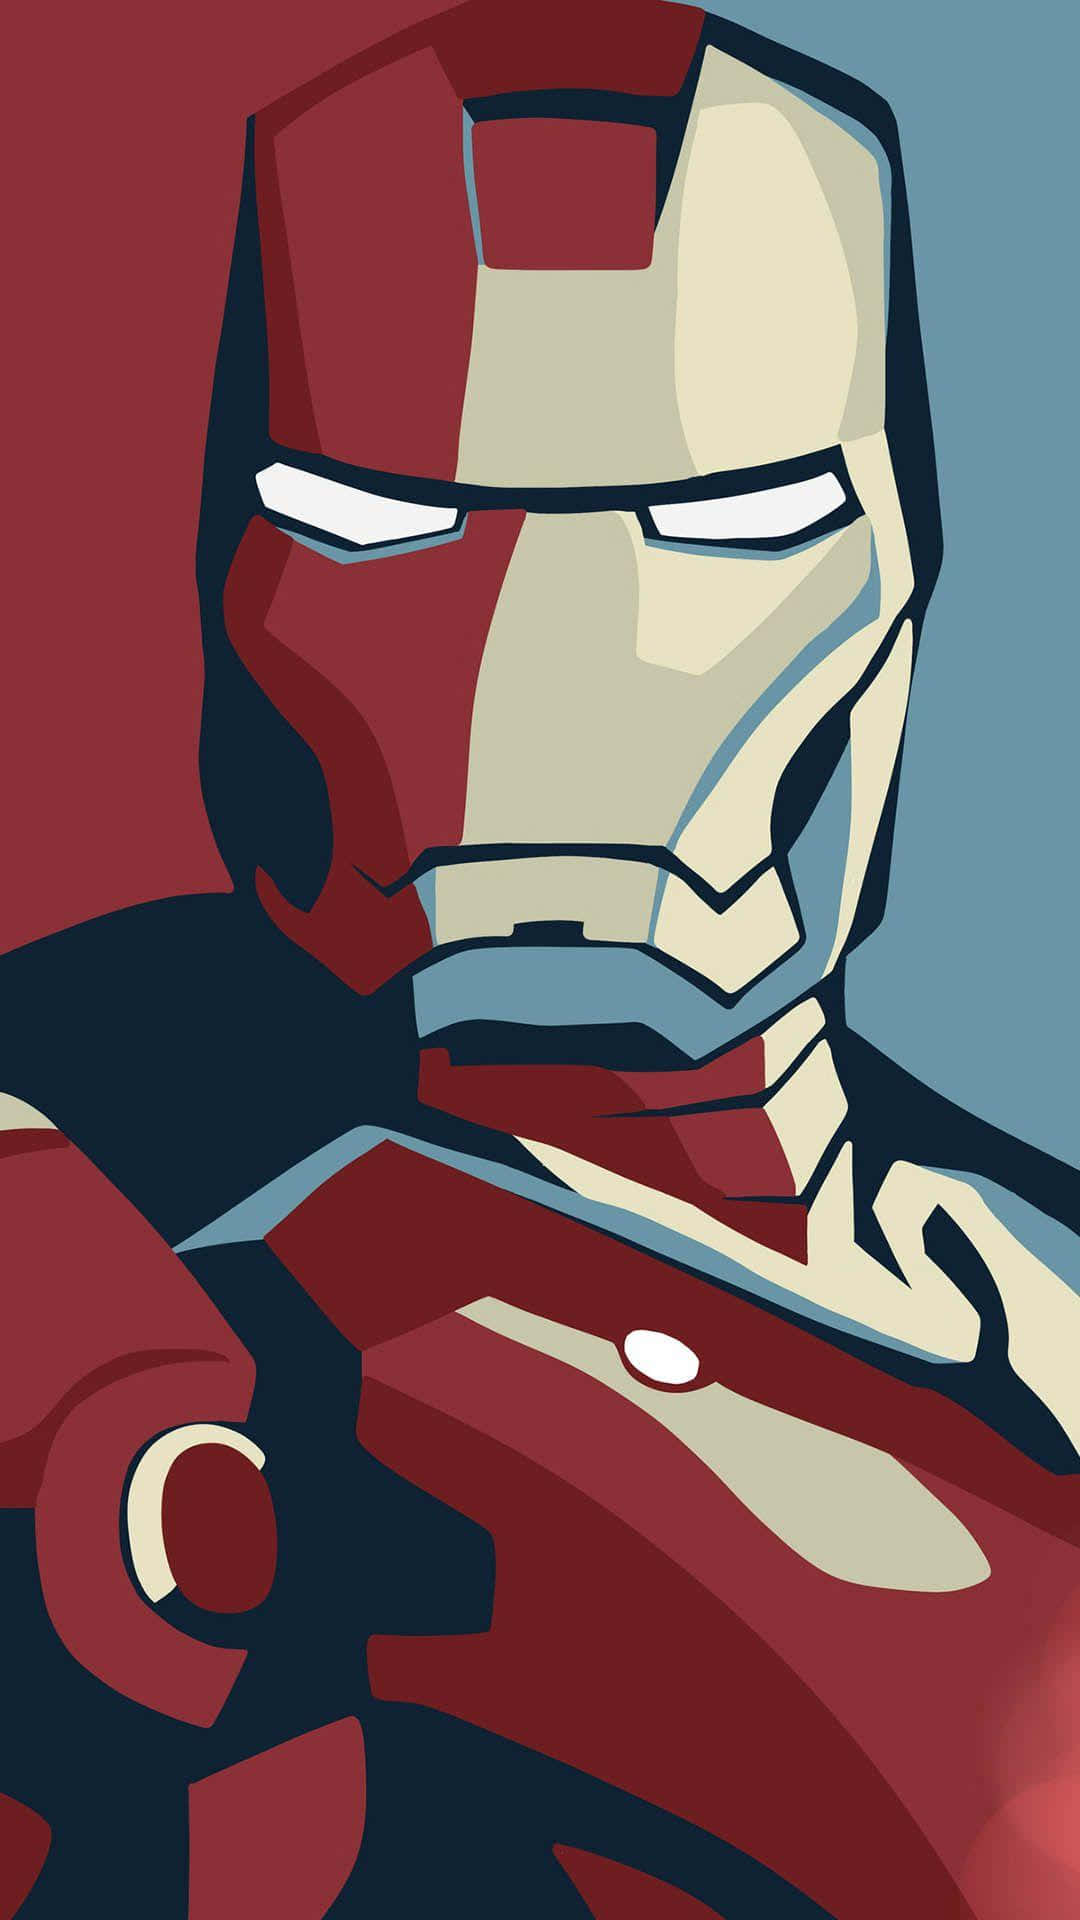 Iron Man, the Invincible Superhero Wallpaper